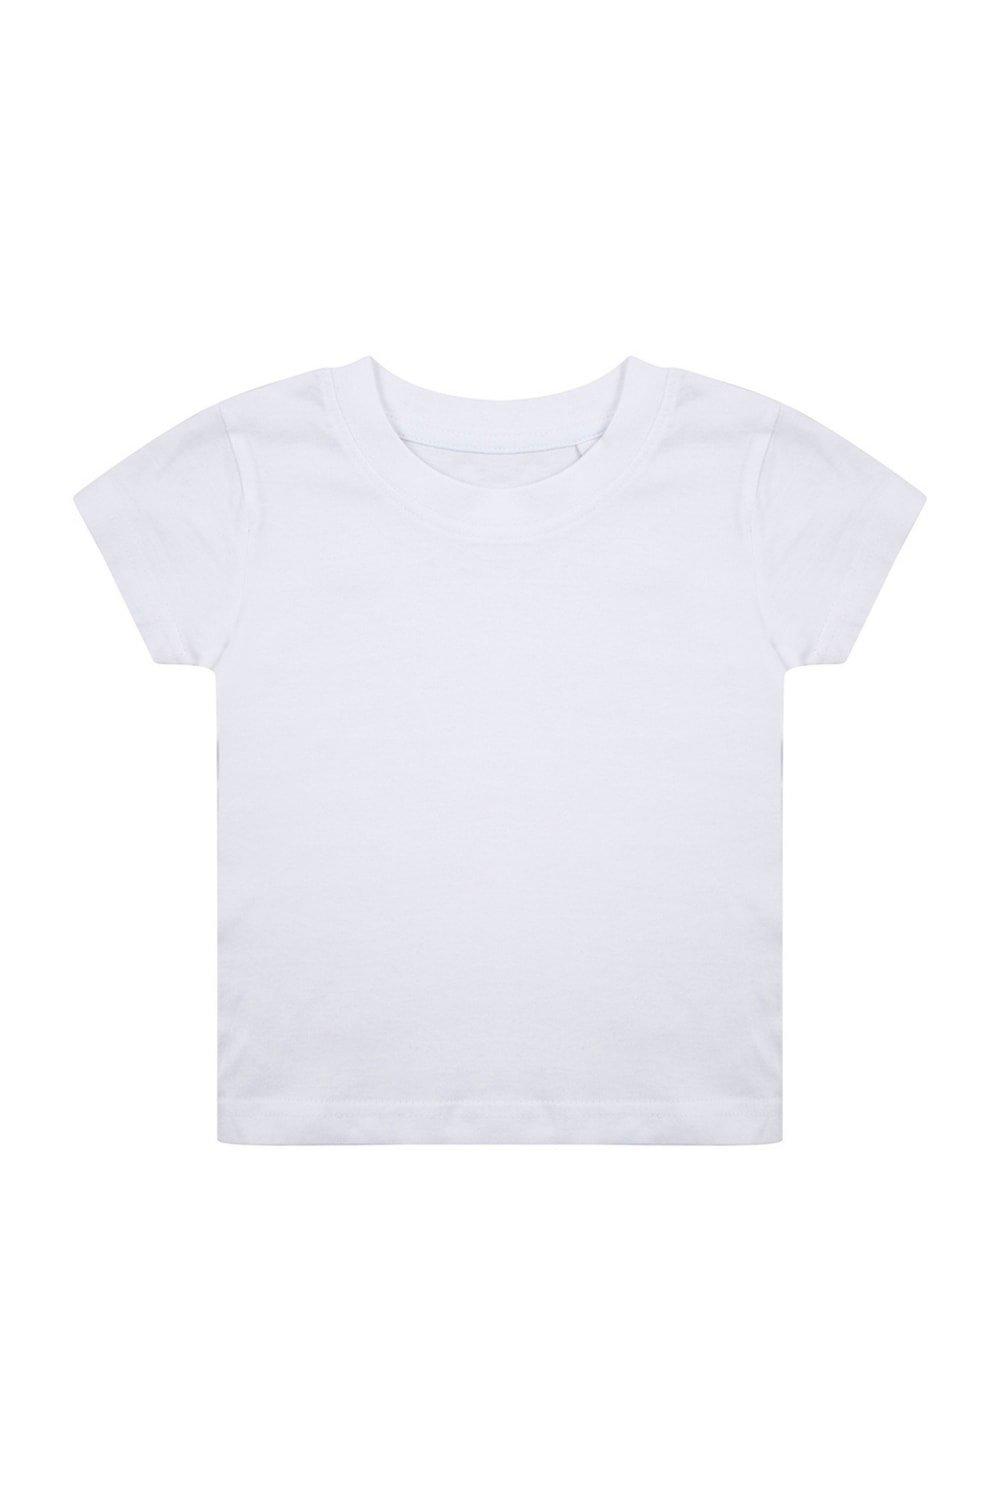 Органическая футболка Larkwood, белый органическая футболка larkwood синий